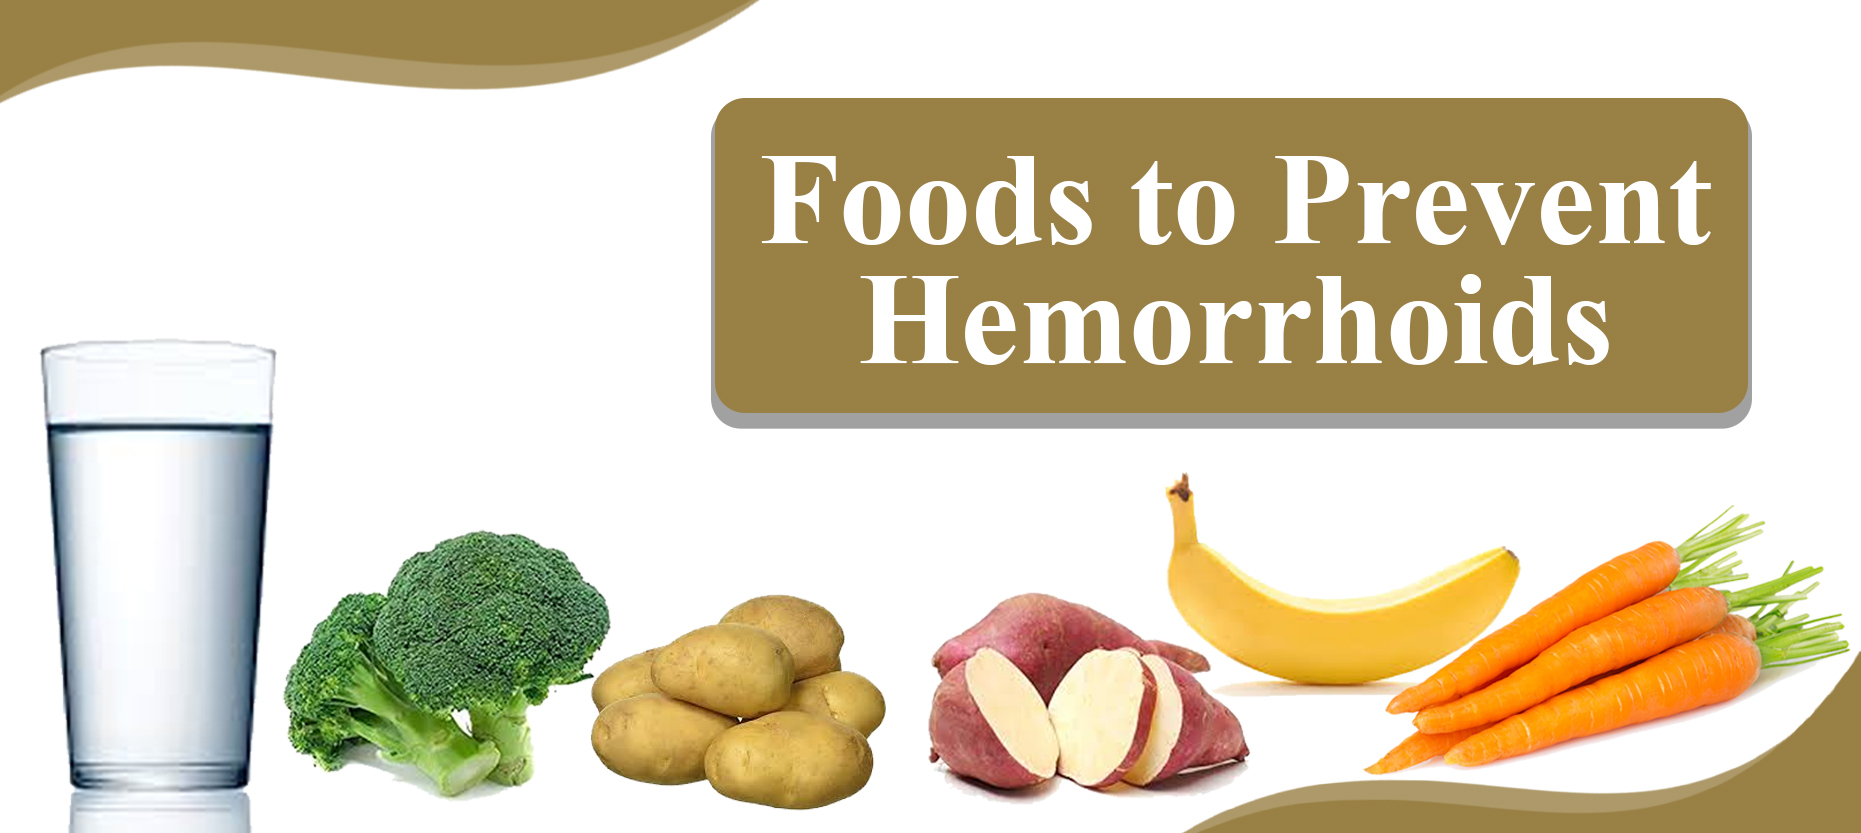 Best Foods to Prevent Hemorrhoids (Piles)